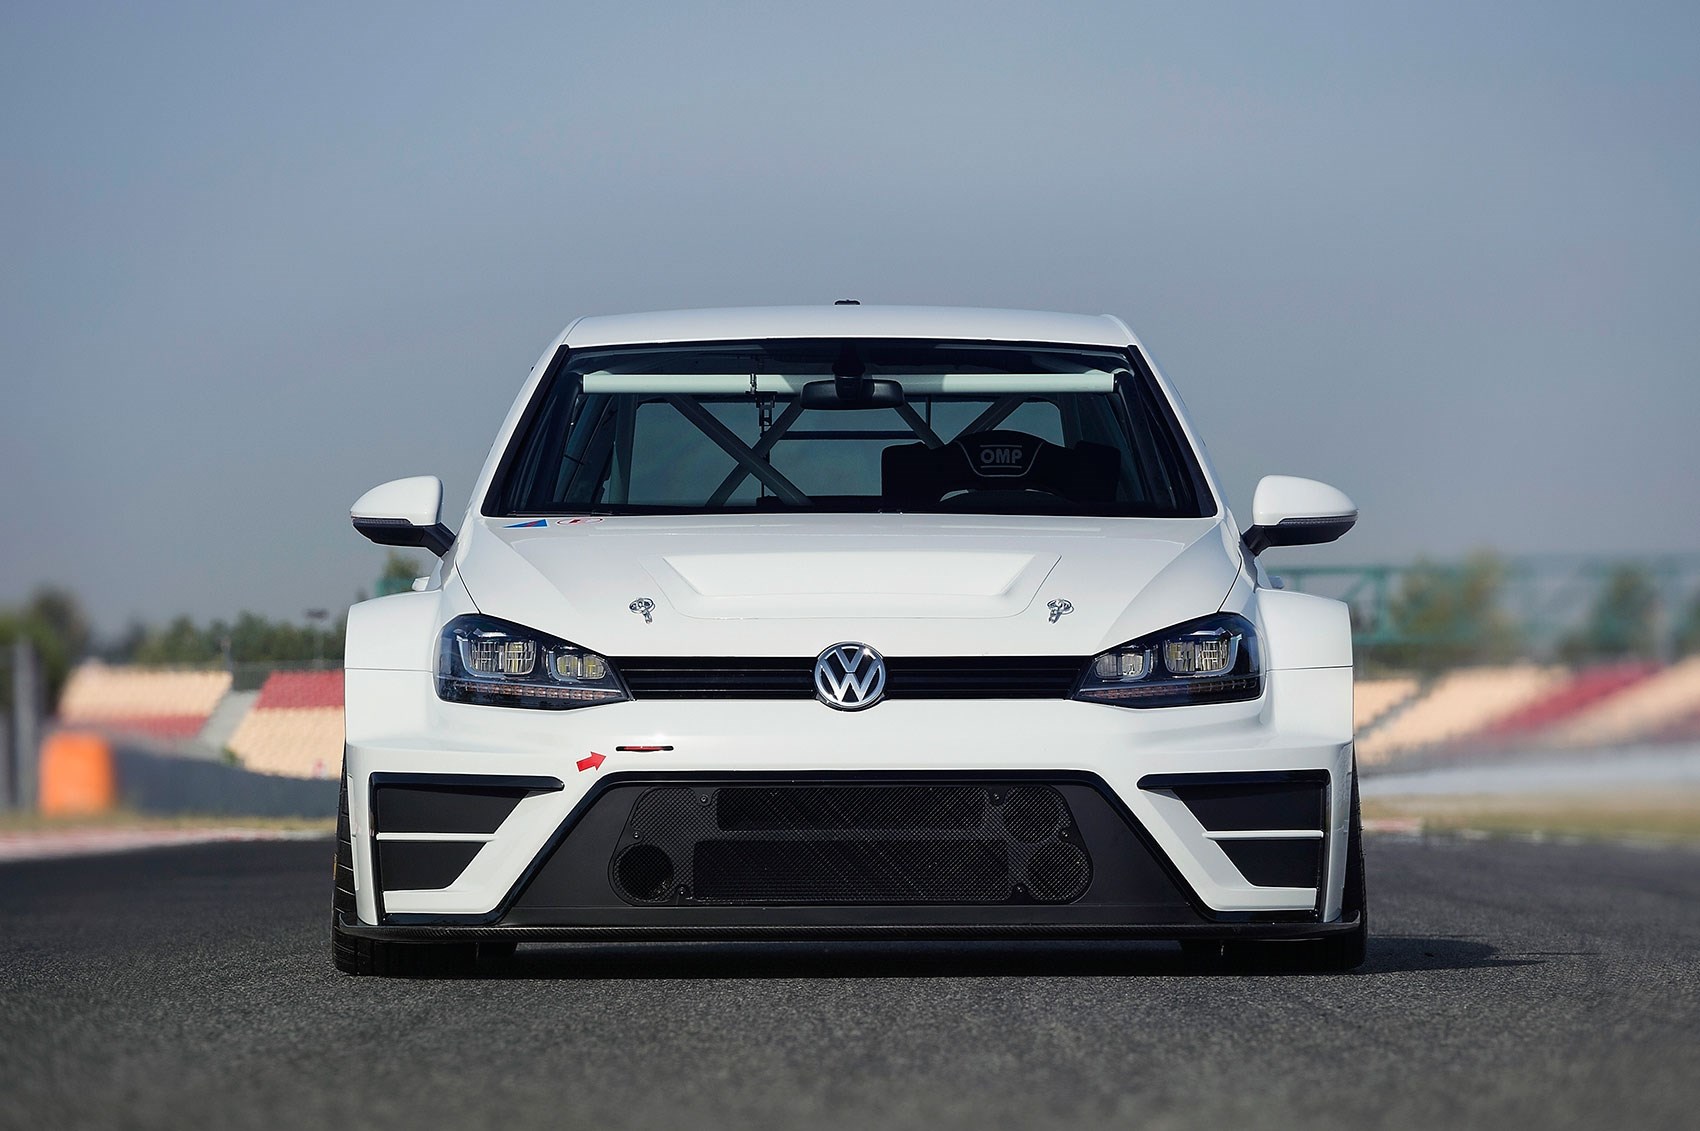 Volkswagen Golf R400: Meet the hottest hatch